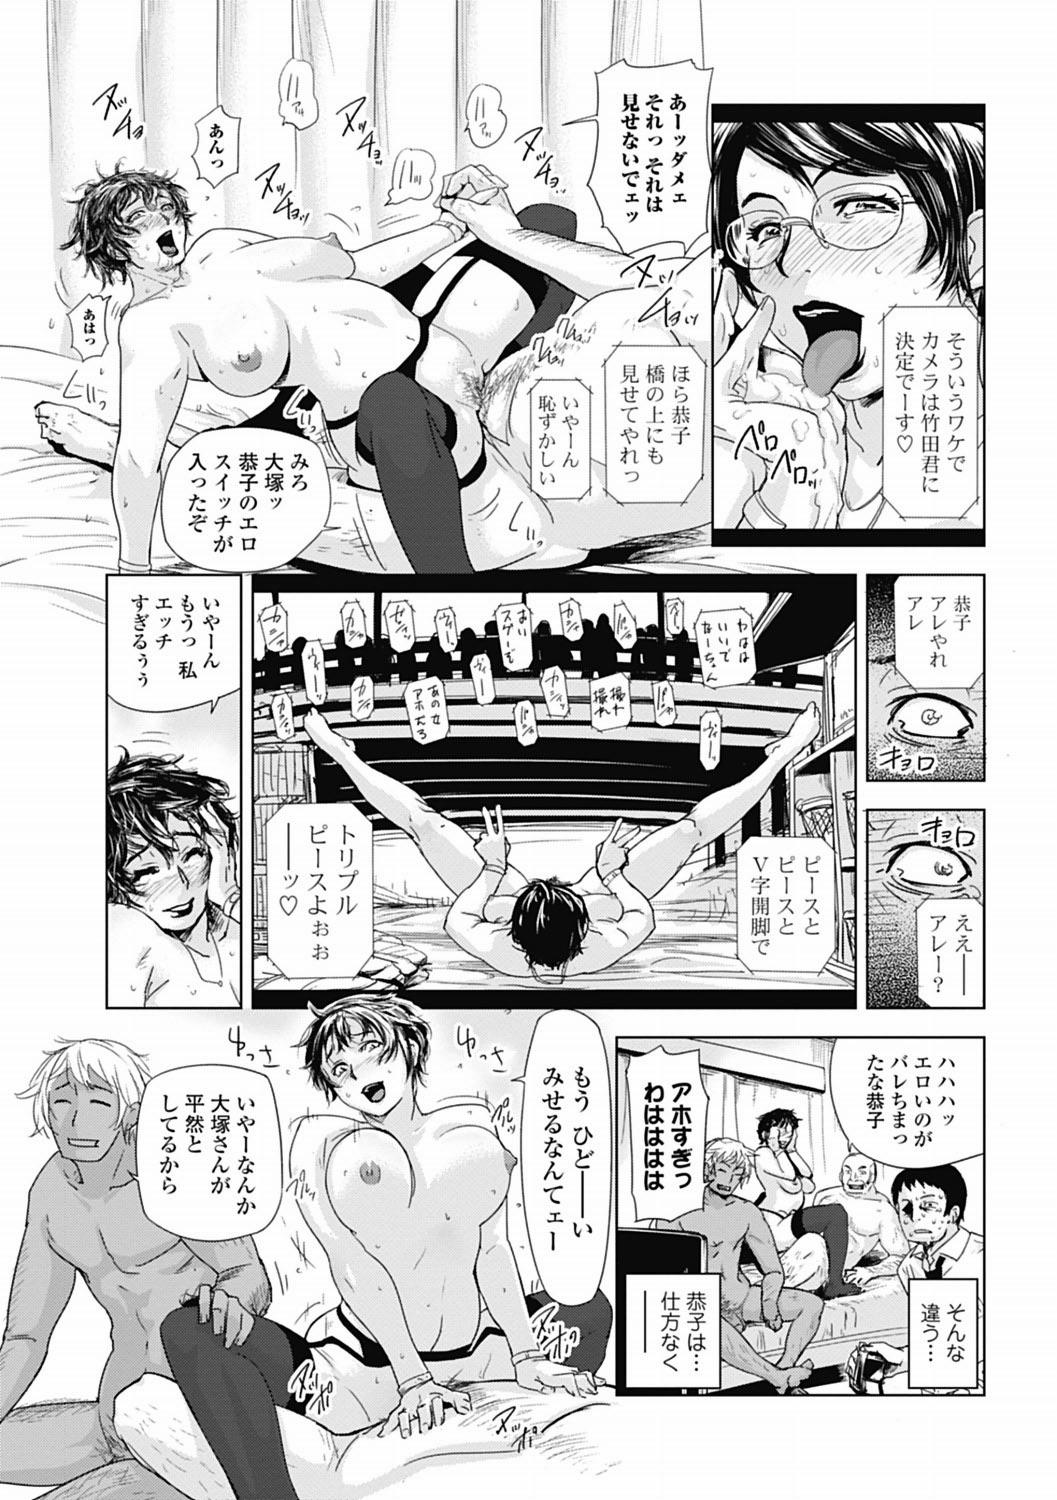 Bishoujo Kakumei KIWAME 2012-04 Vol.19 191